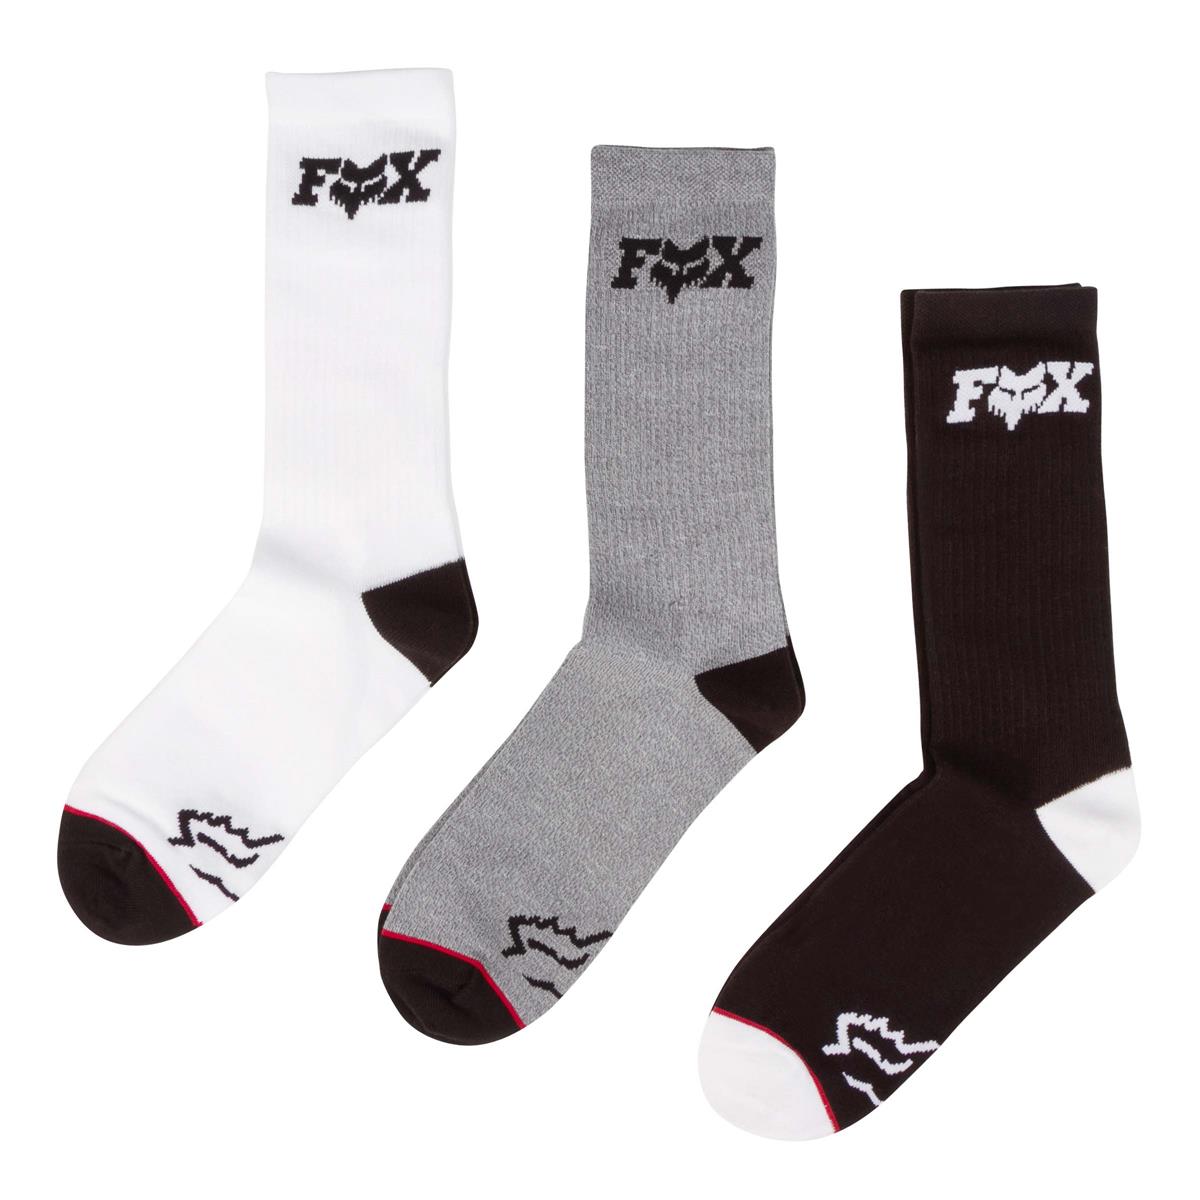 Fox Socken FoxHeadX Crew 3er Pack, Grau/Weiß/Schwarz